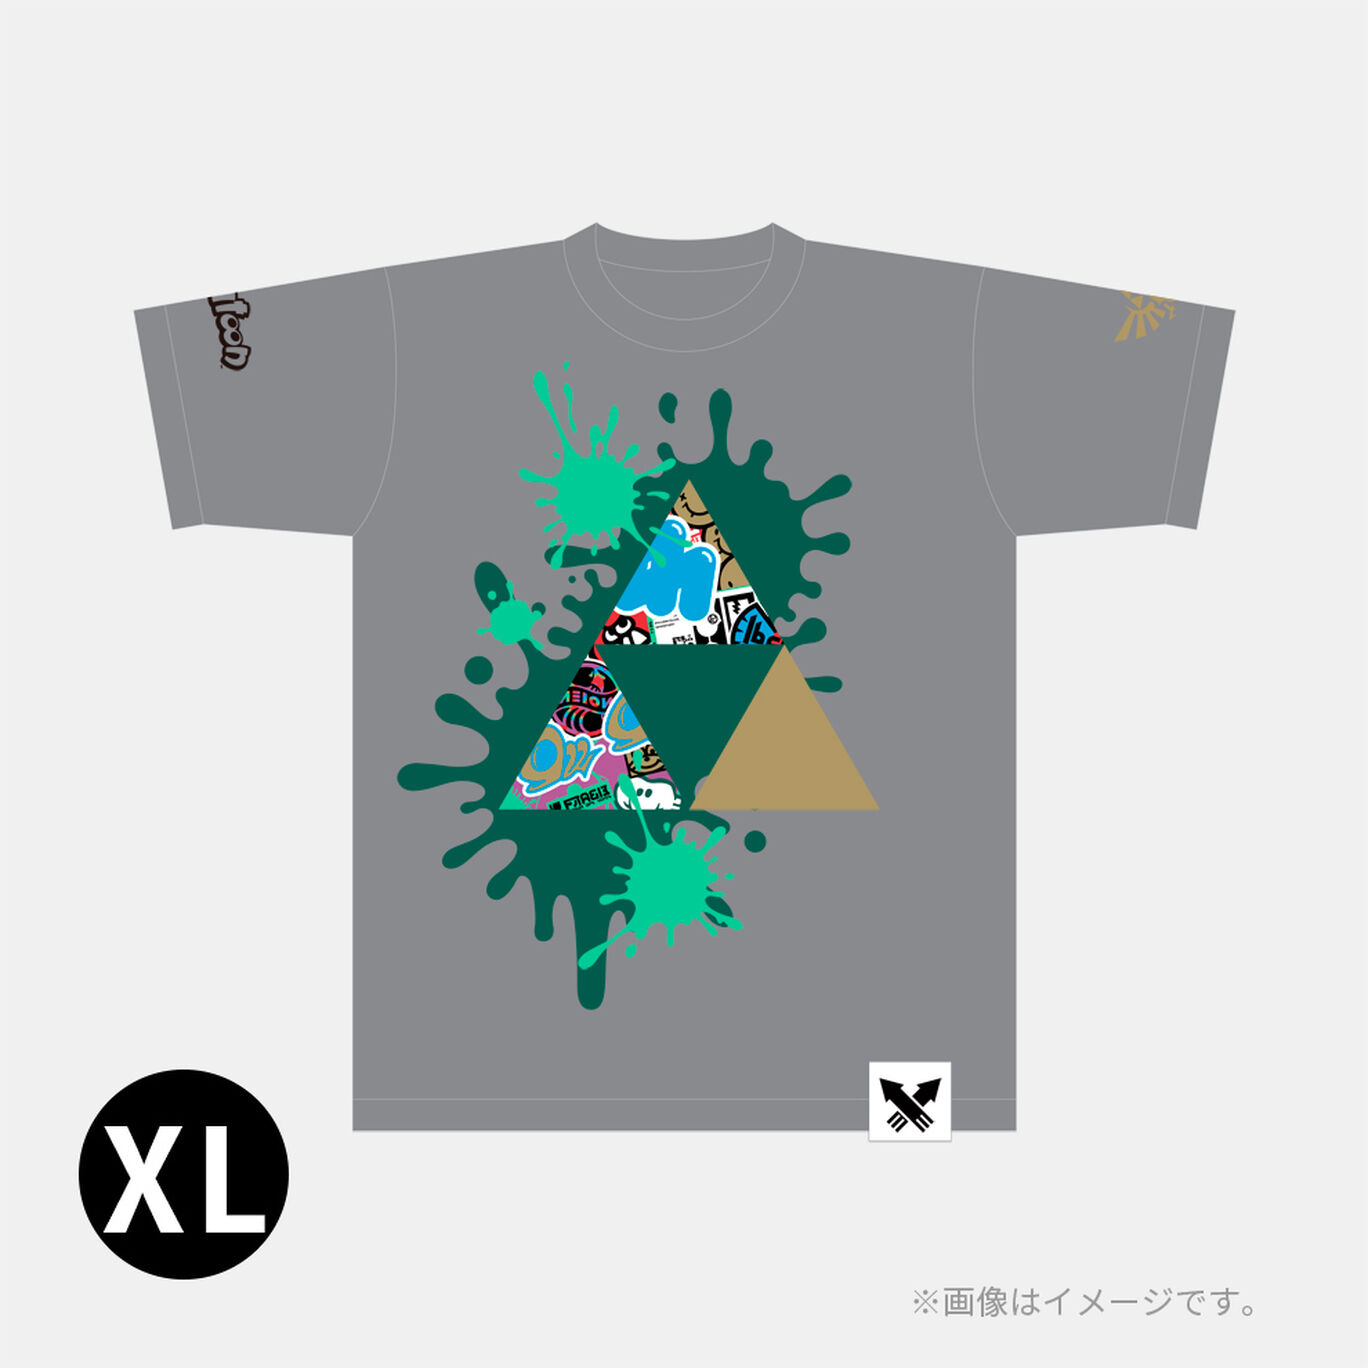 スプラトゥーン3 フェスTシャツ 勇気 XL